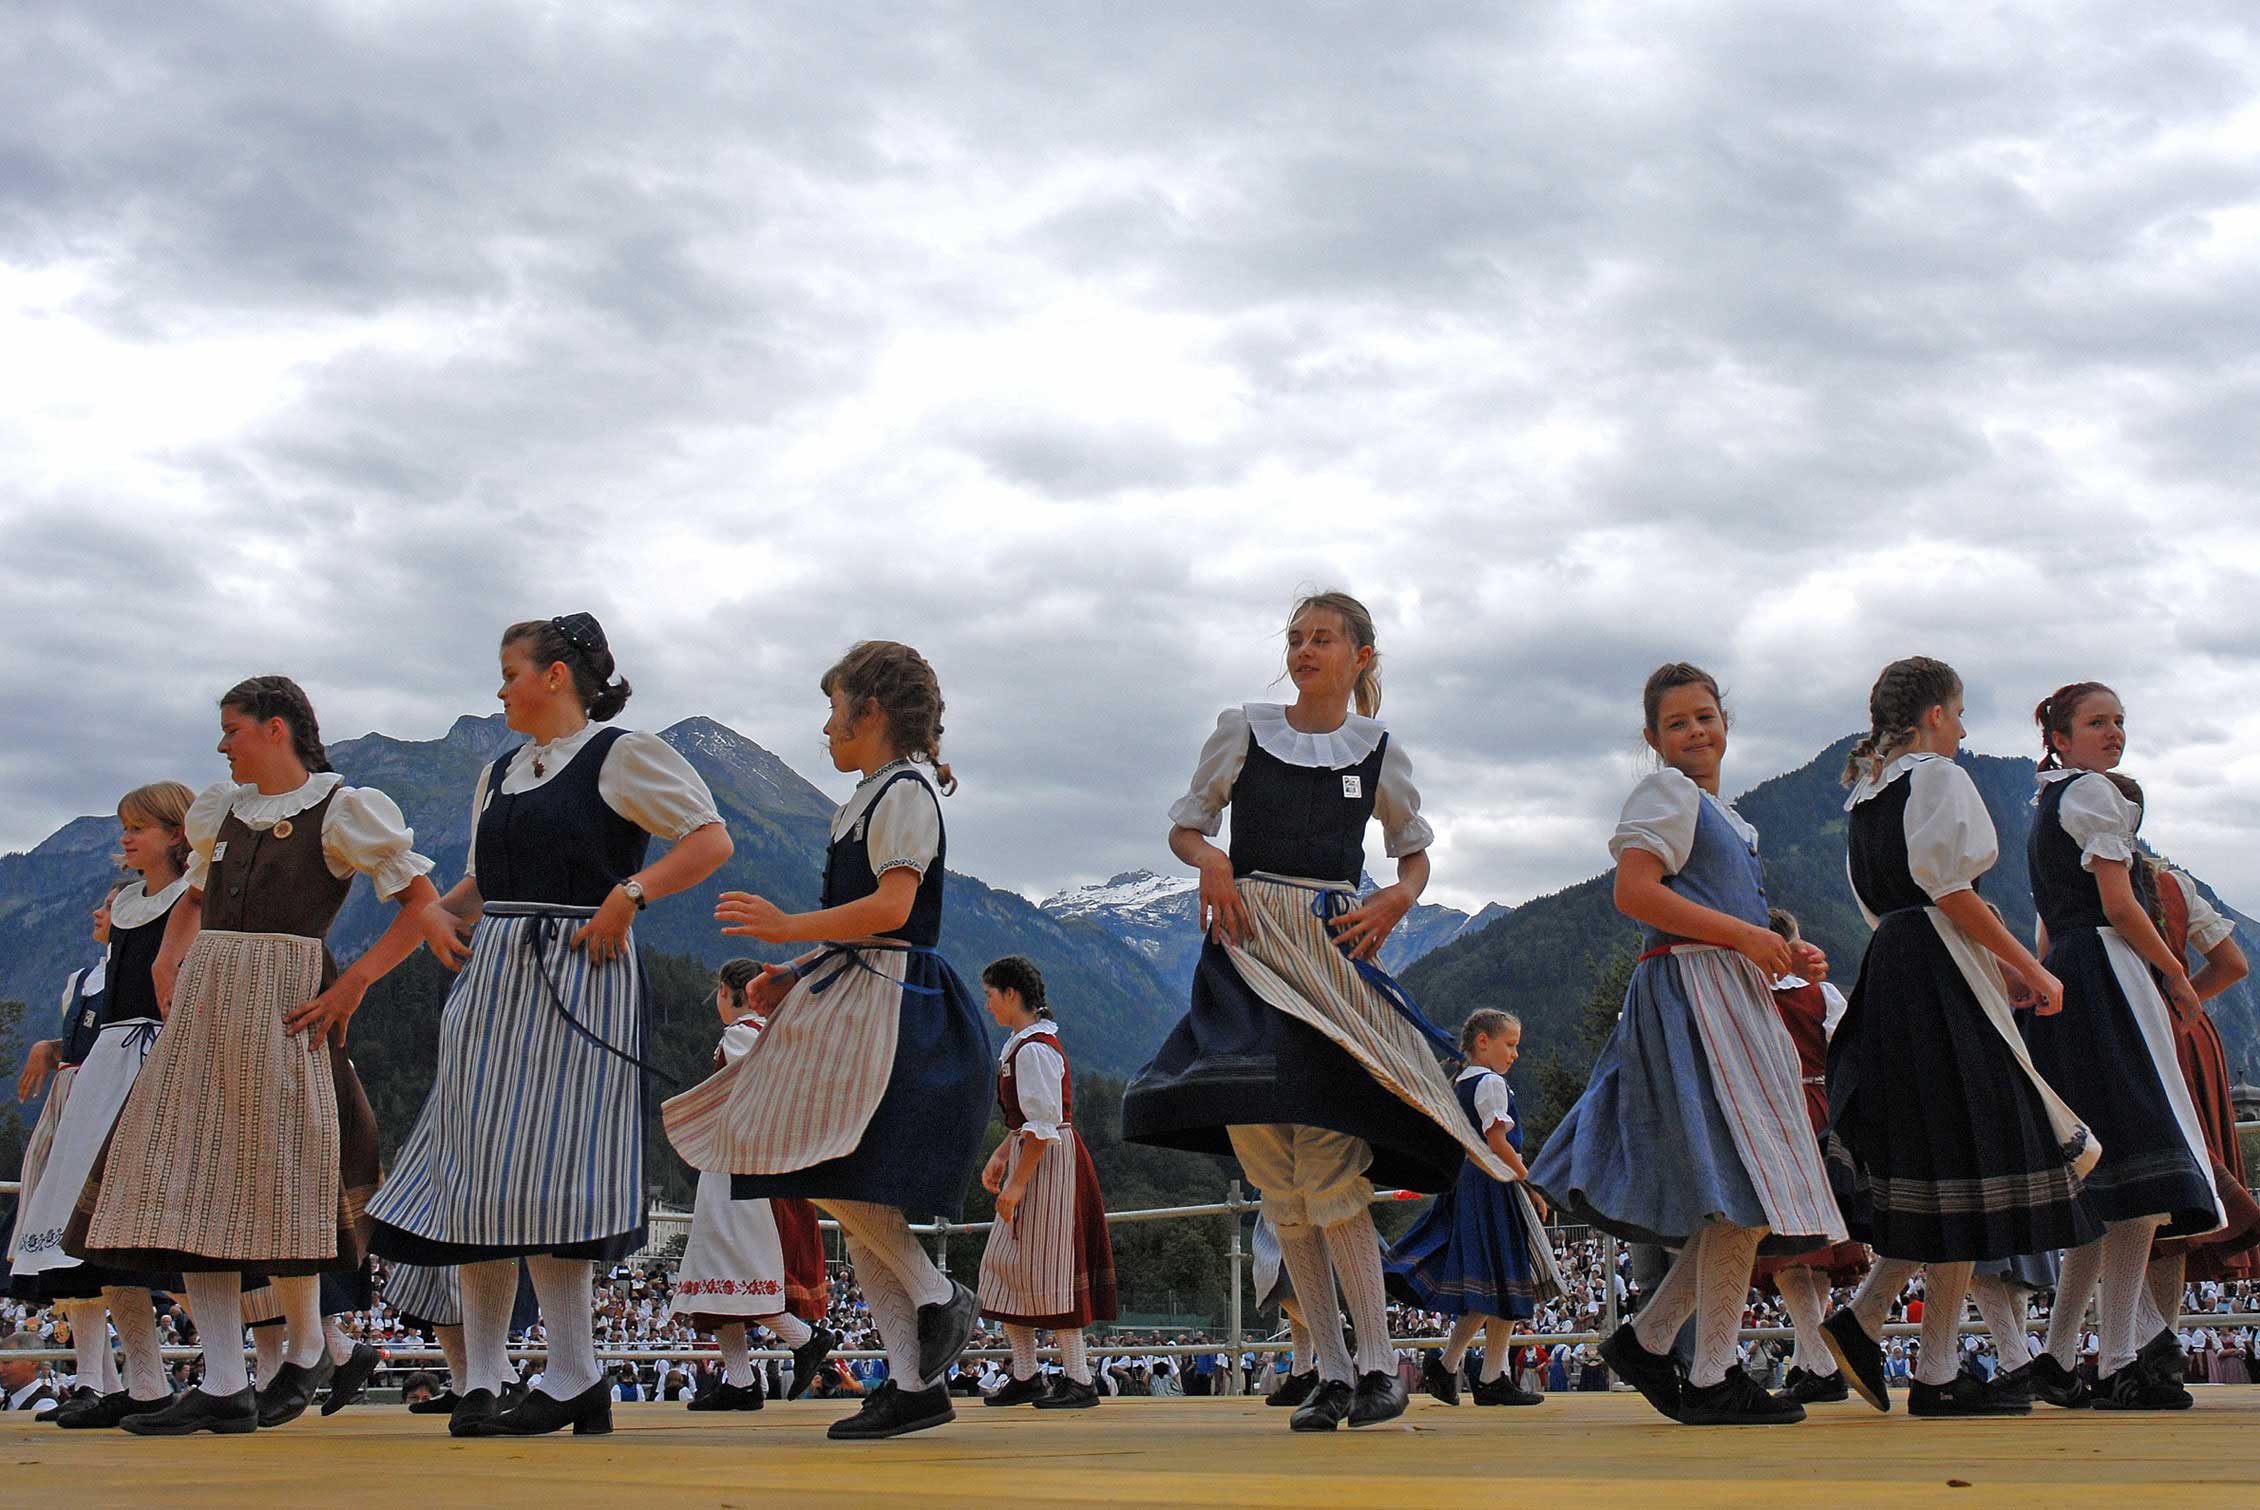 Danse en costume à la fête d’Unspunnen en 2006 © Steiner/Verein Schweizerisches Trachten- und Alphirtenfest Unspunnen